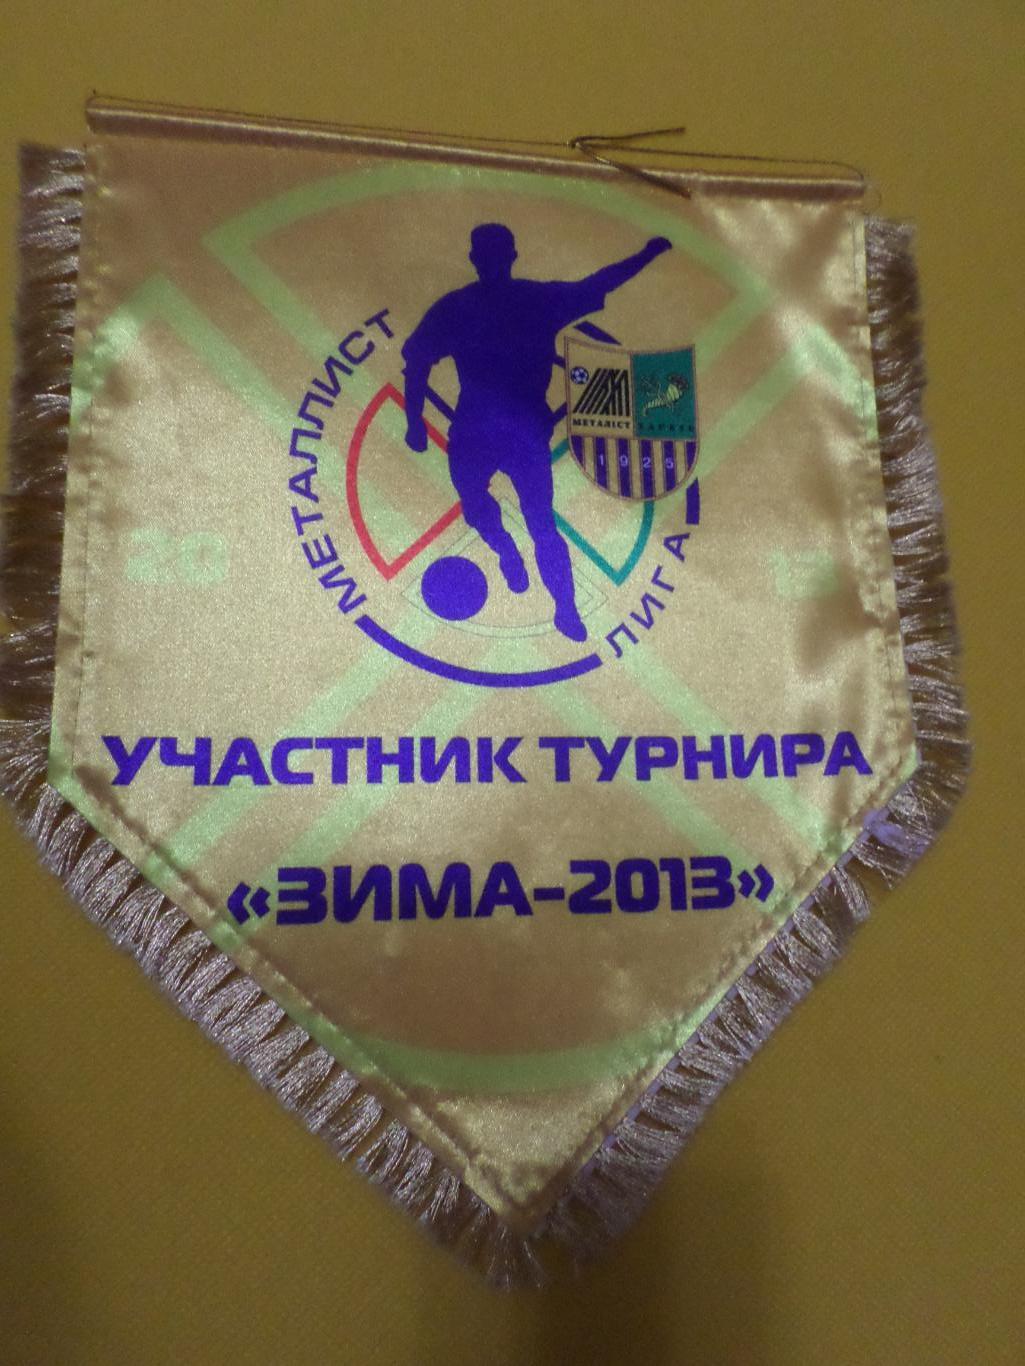 Вымпел турнир Металлист-Лига 2013 г Харьков